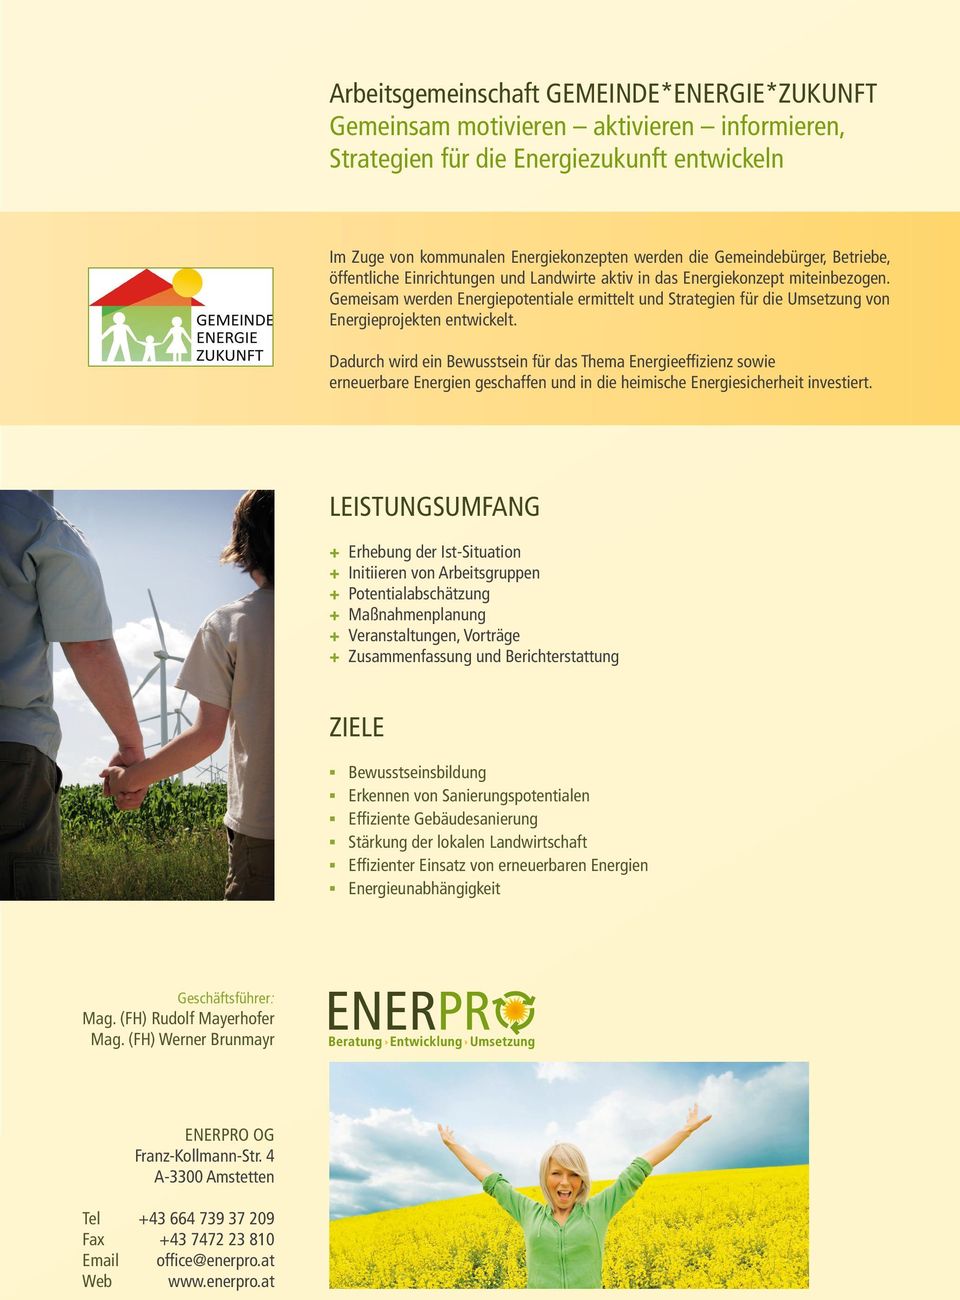 Gemeisam werden Energiepotentiale ermittelt und Strategien für die Umsetzung von Energieprojekten entwickelt.